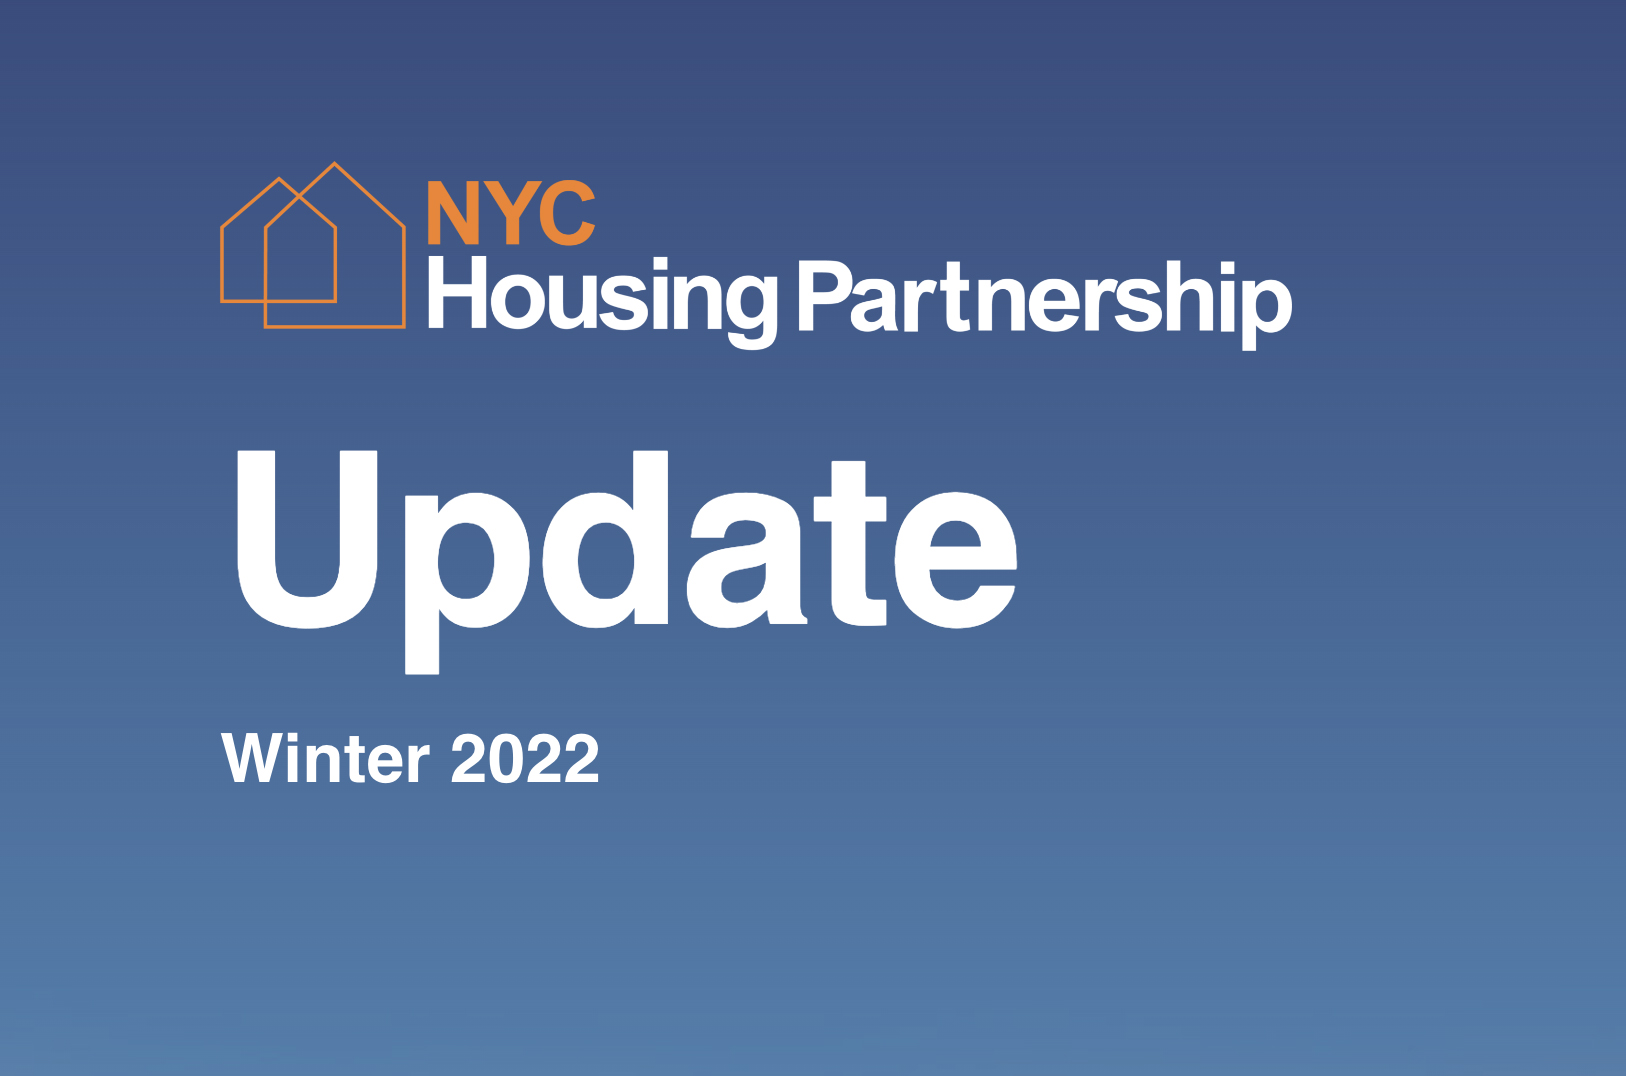 NYC Housing Partnership Update Winter 2022